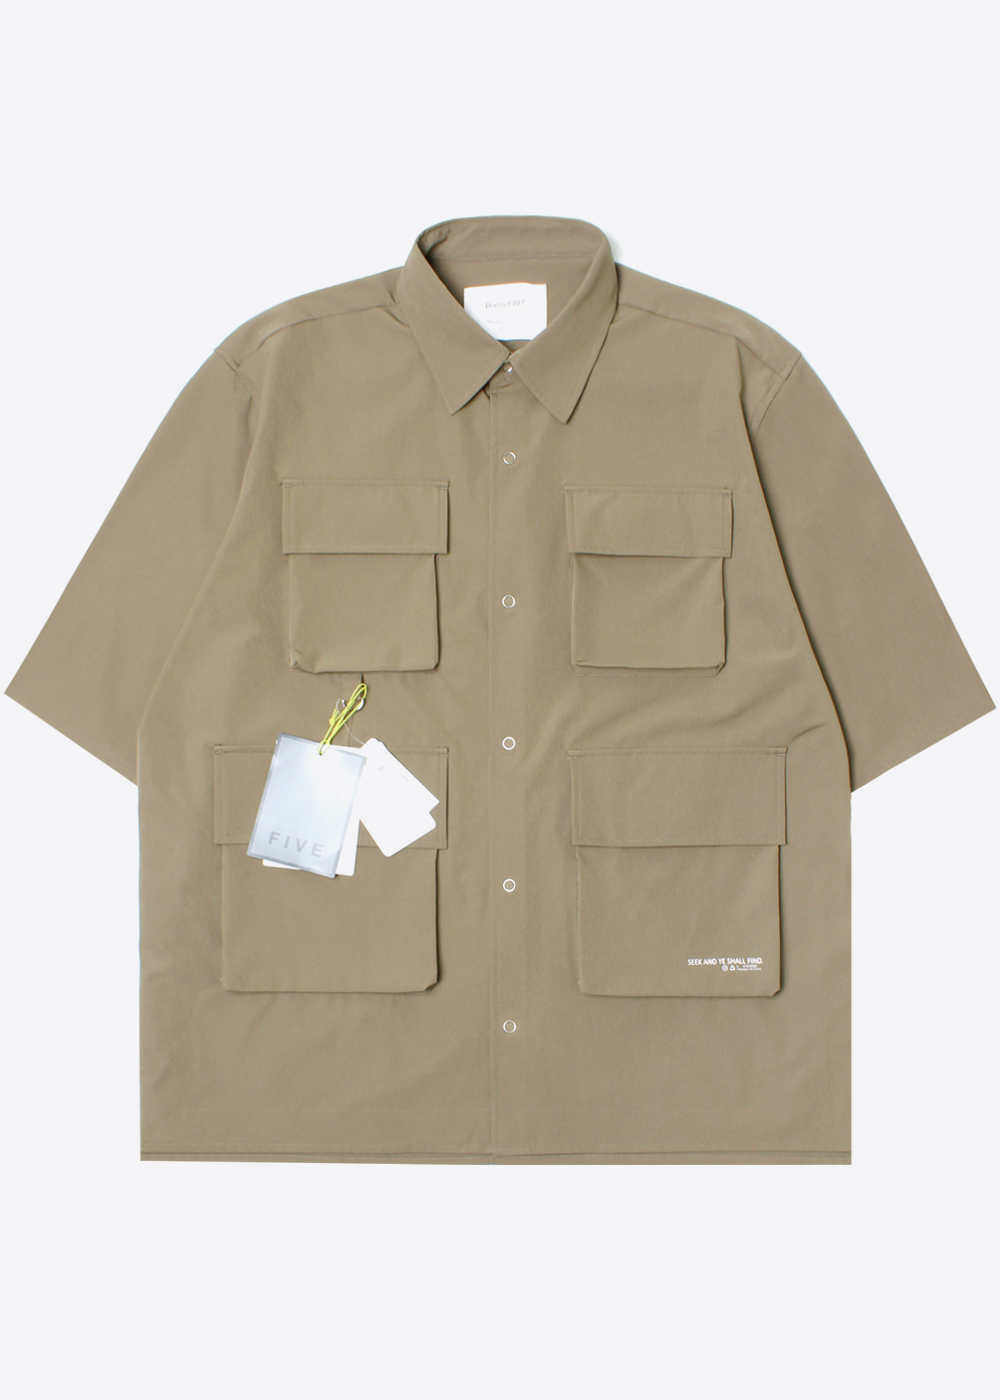 INHERIT BY JOURNAL STANDARD’over fit’poly 4 pocket explorer shirt